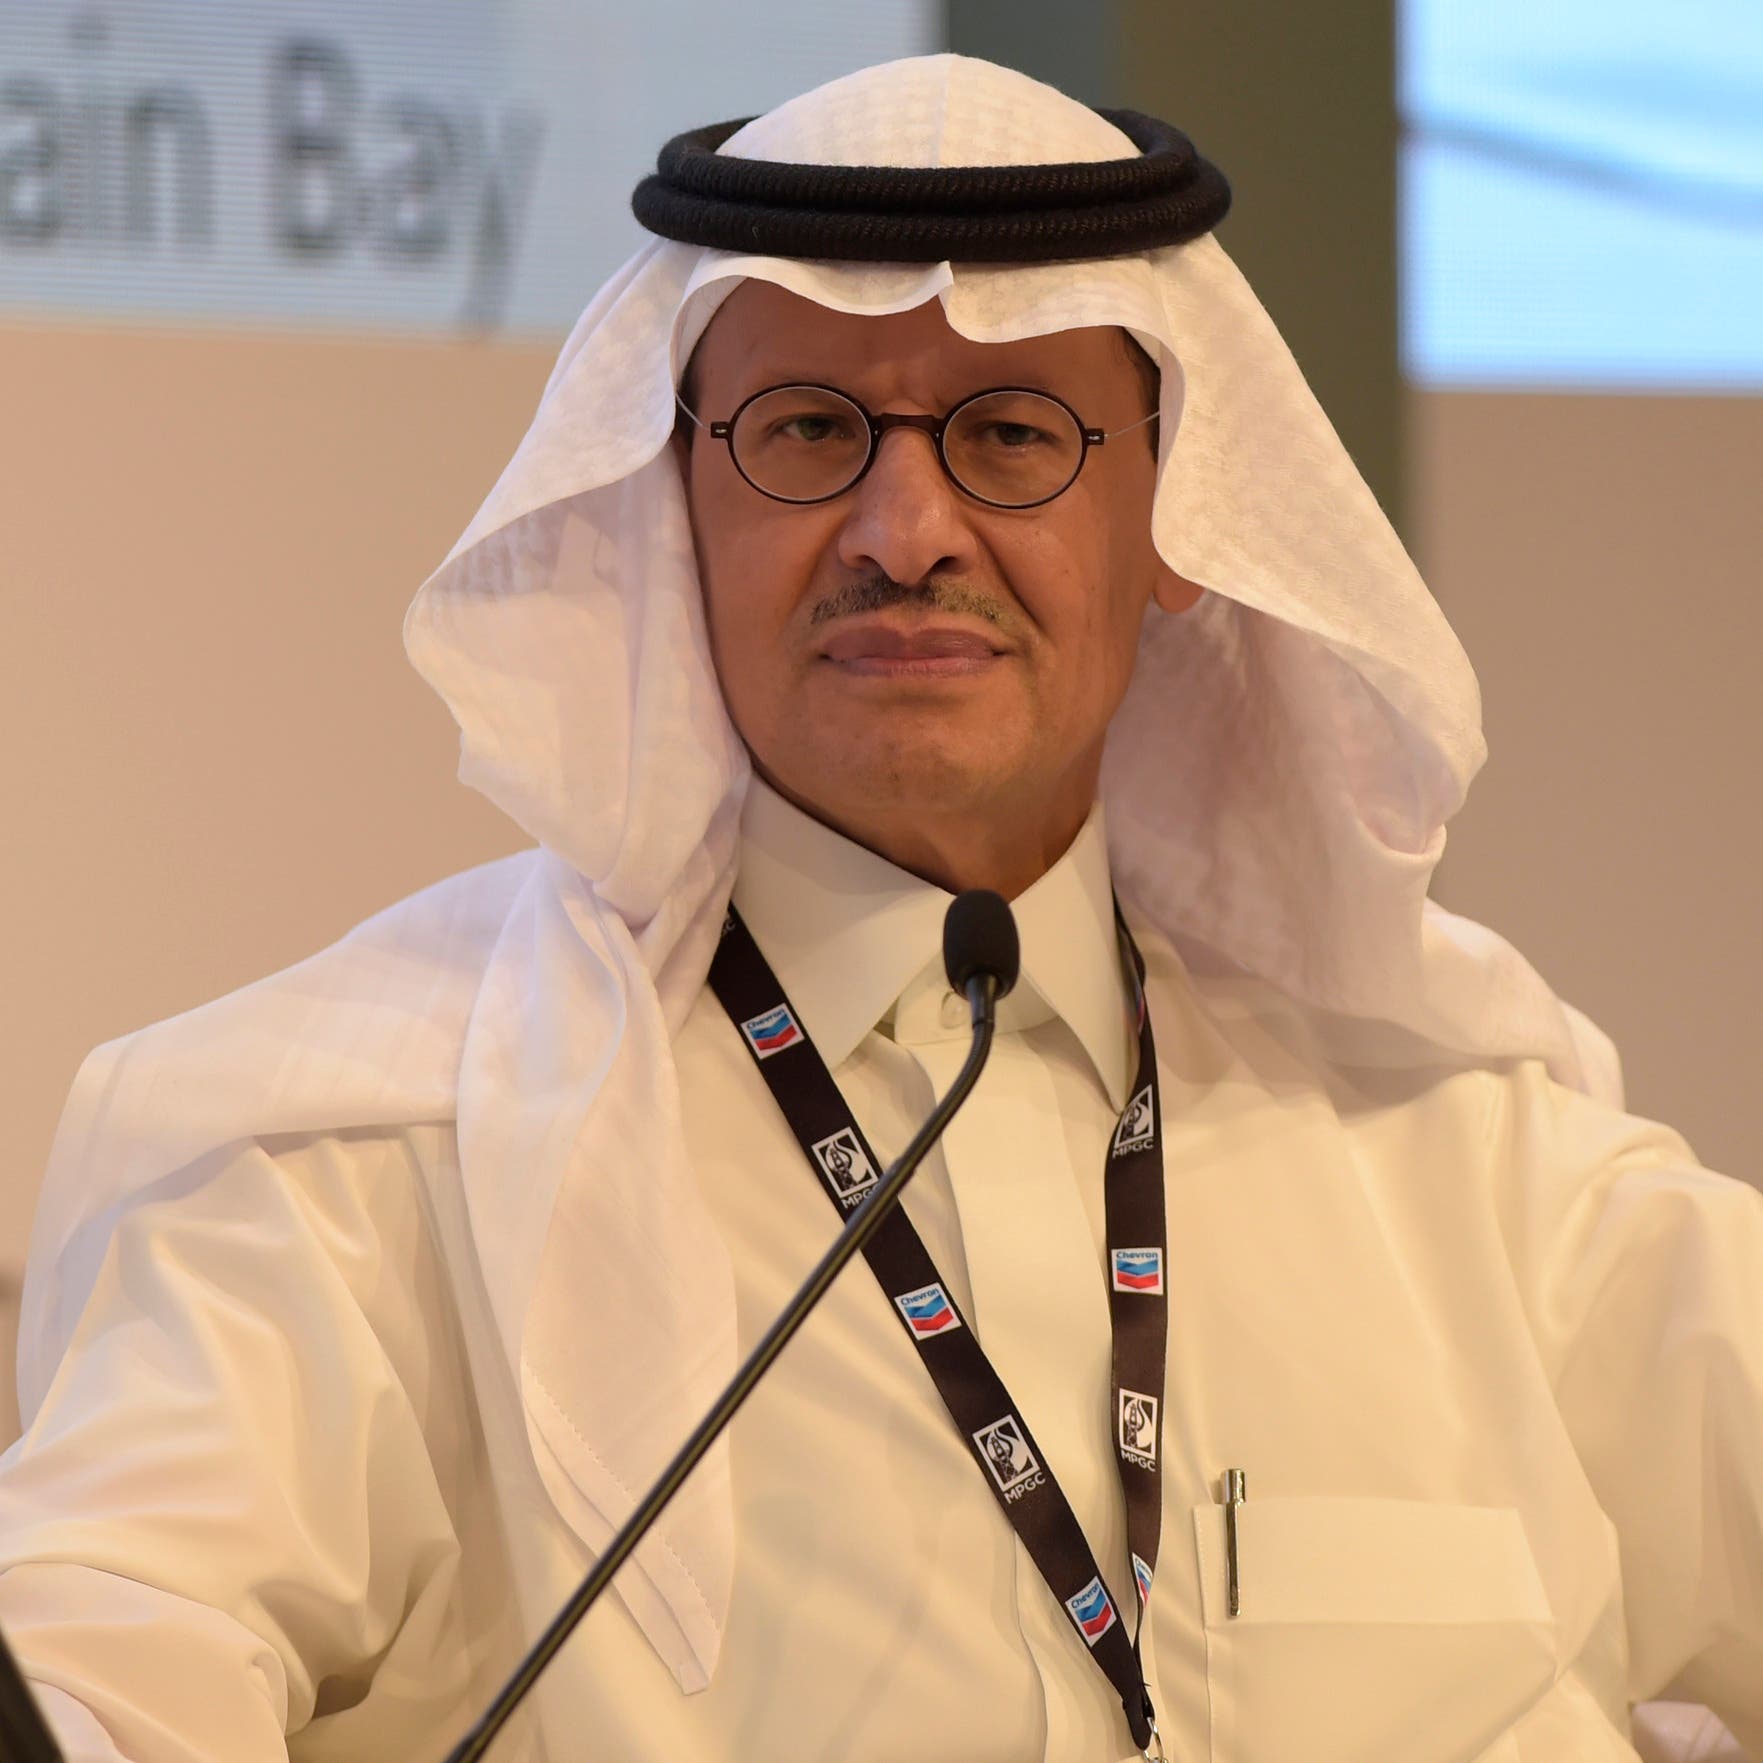 رئيس "أجدان" للعربية: نمو متزايد للطلب على الوحدات السكنية شمال الرياض